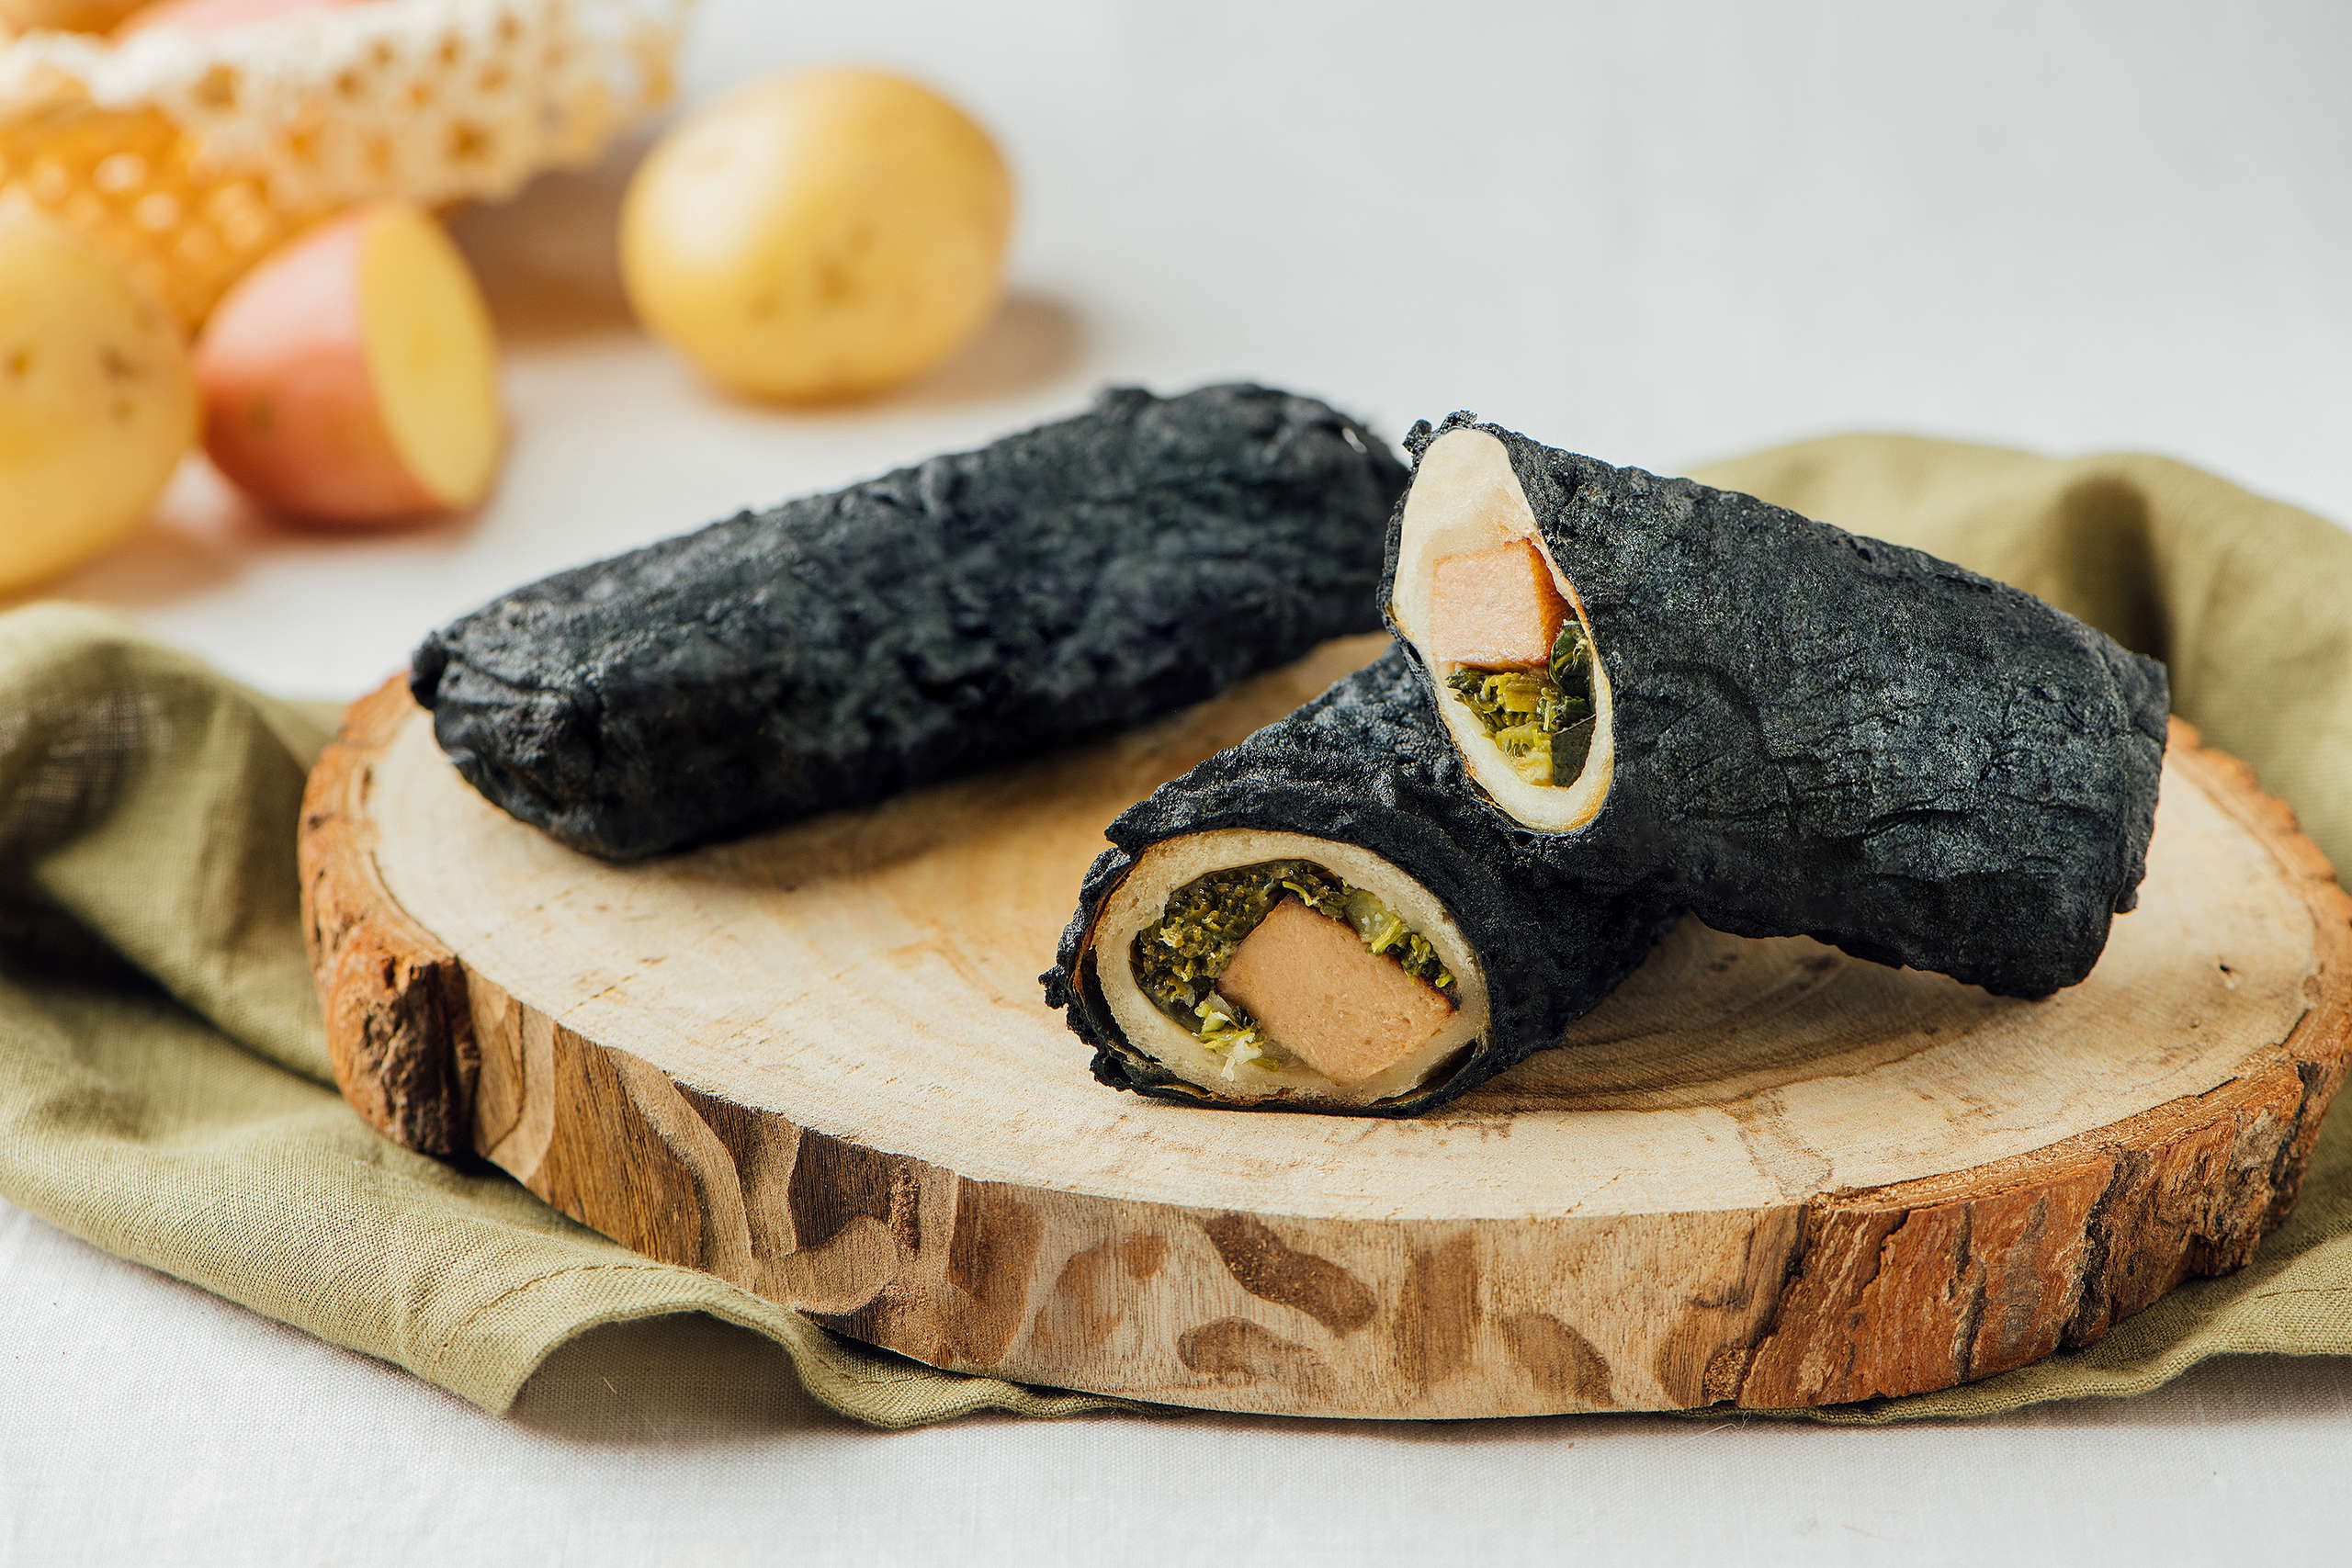 「碳式時蔬洋芋捲」內含濃郁的全植起司與香甜馬鈴薯，純素者也能安心享用。© Greenpeace